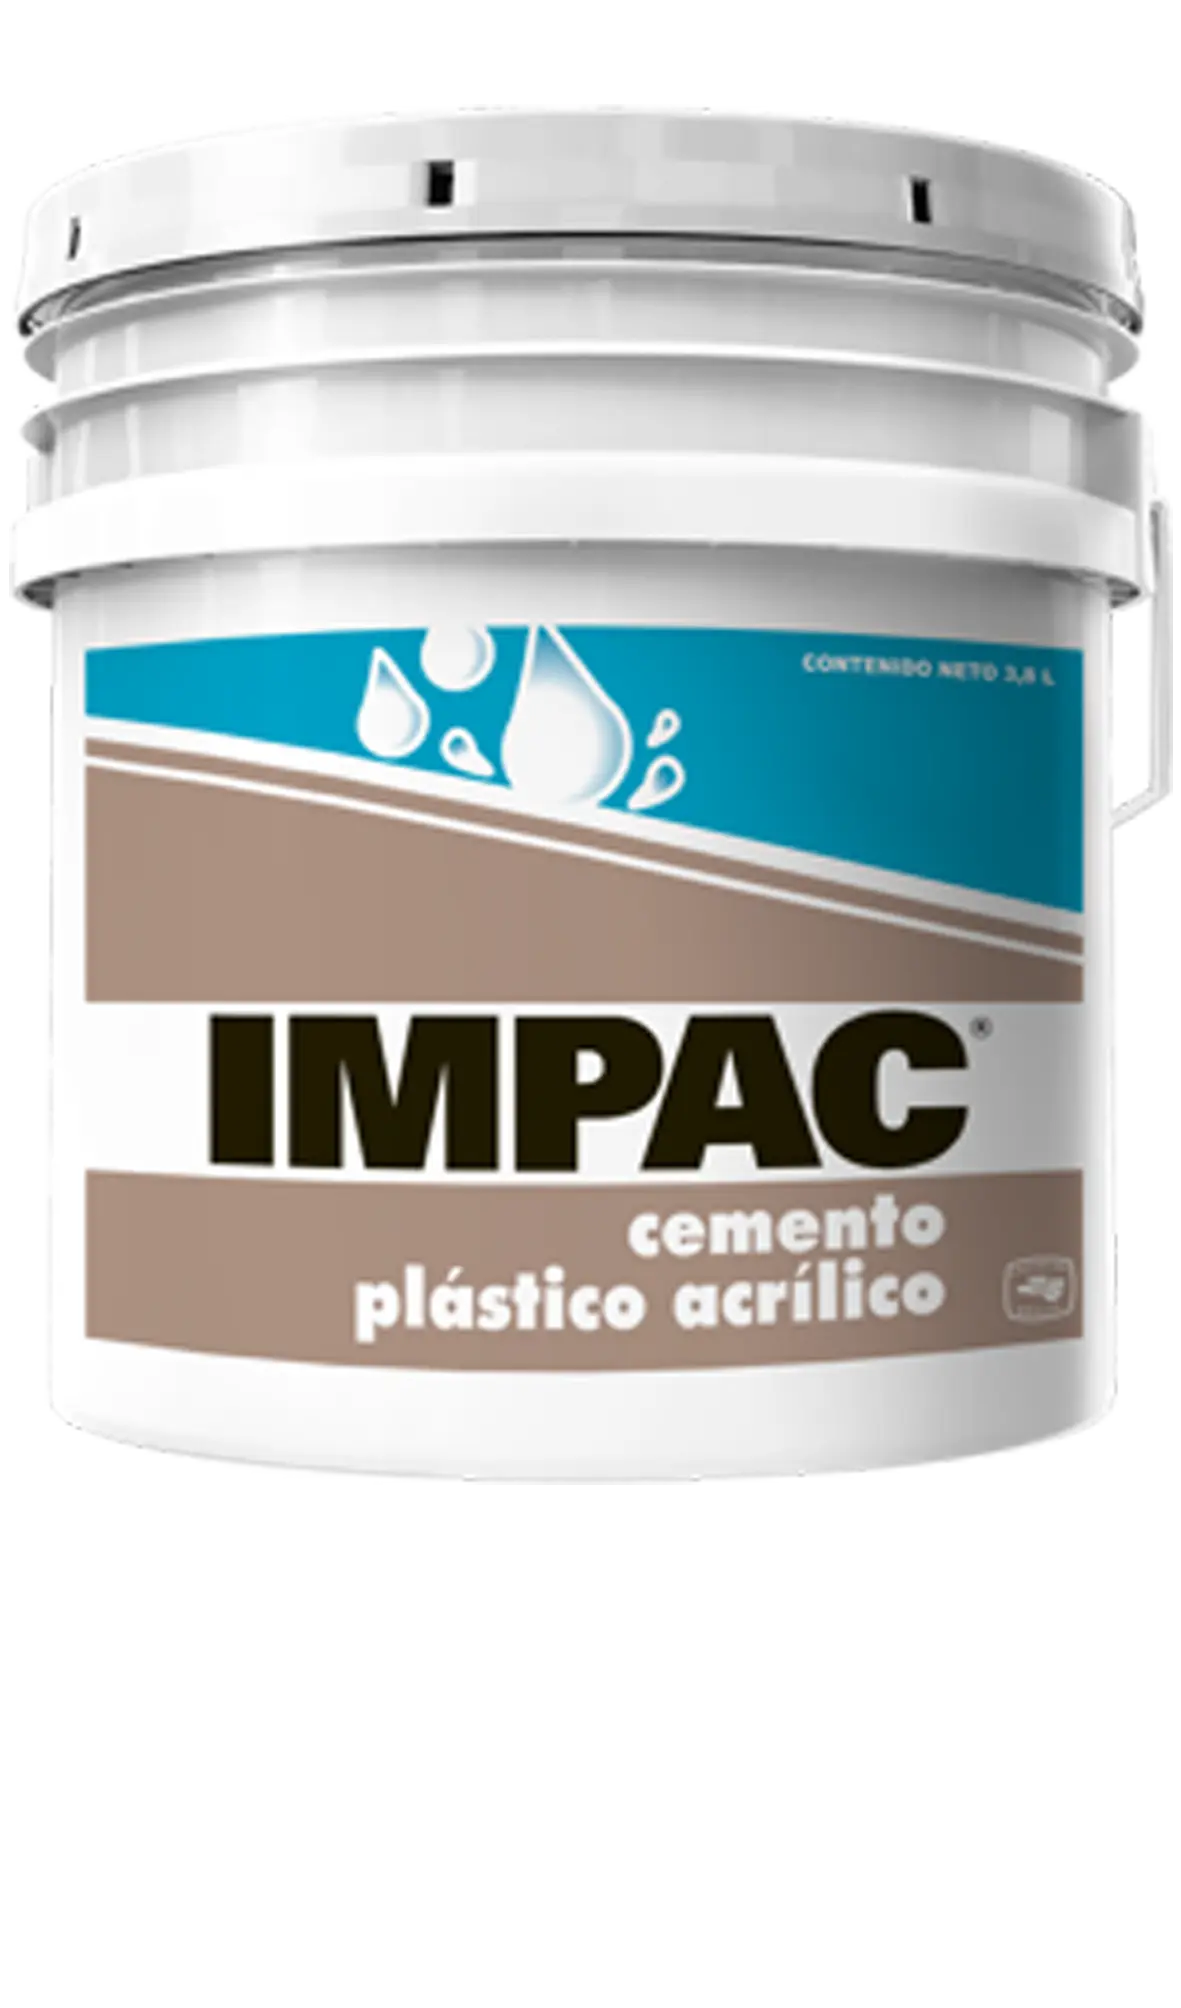 cemento plastico precio - Qué función tiene el cemento plástico